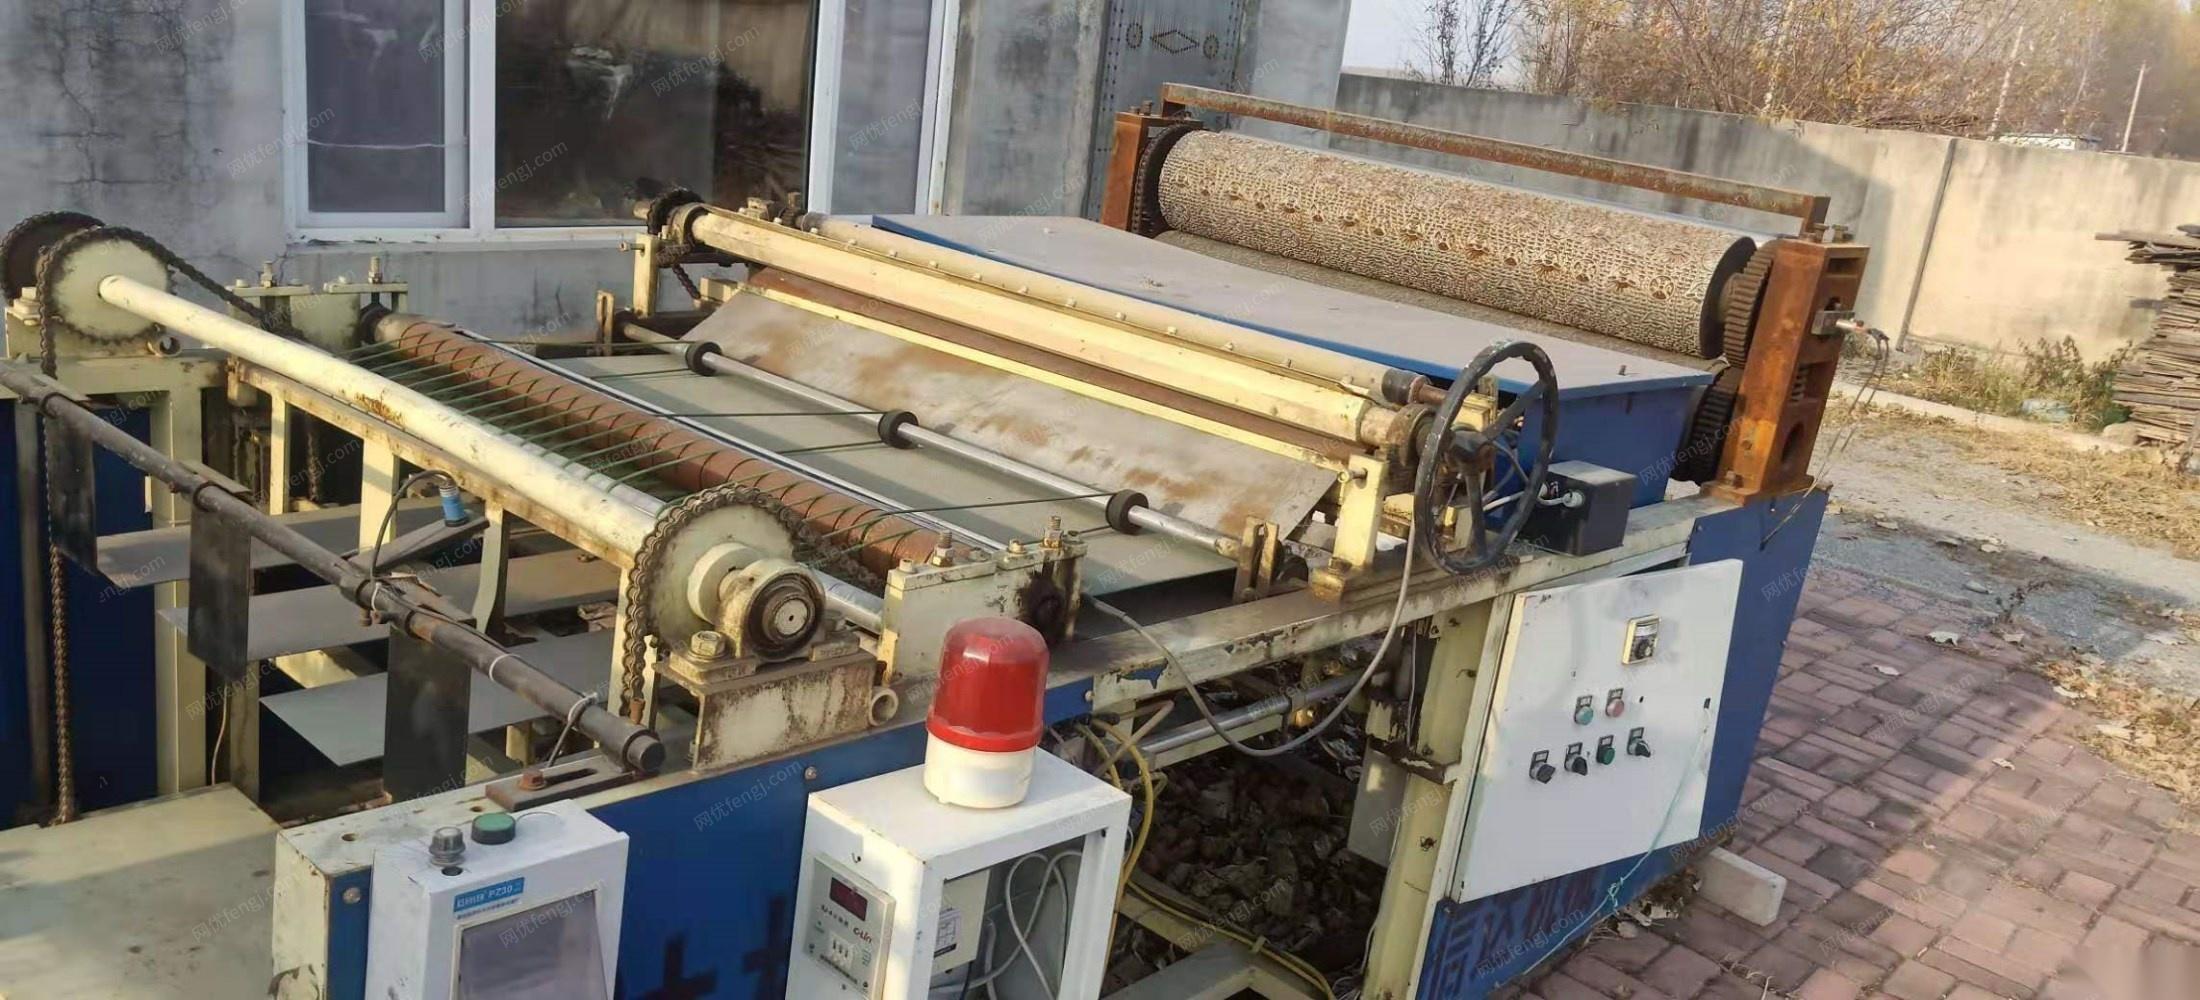 吉林吉林出售2.6烧纸印花机器 19000元